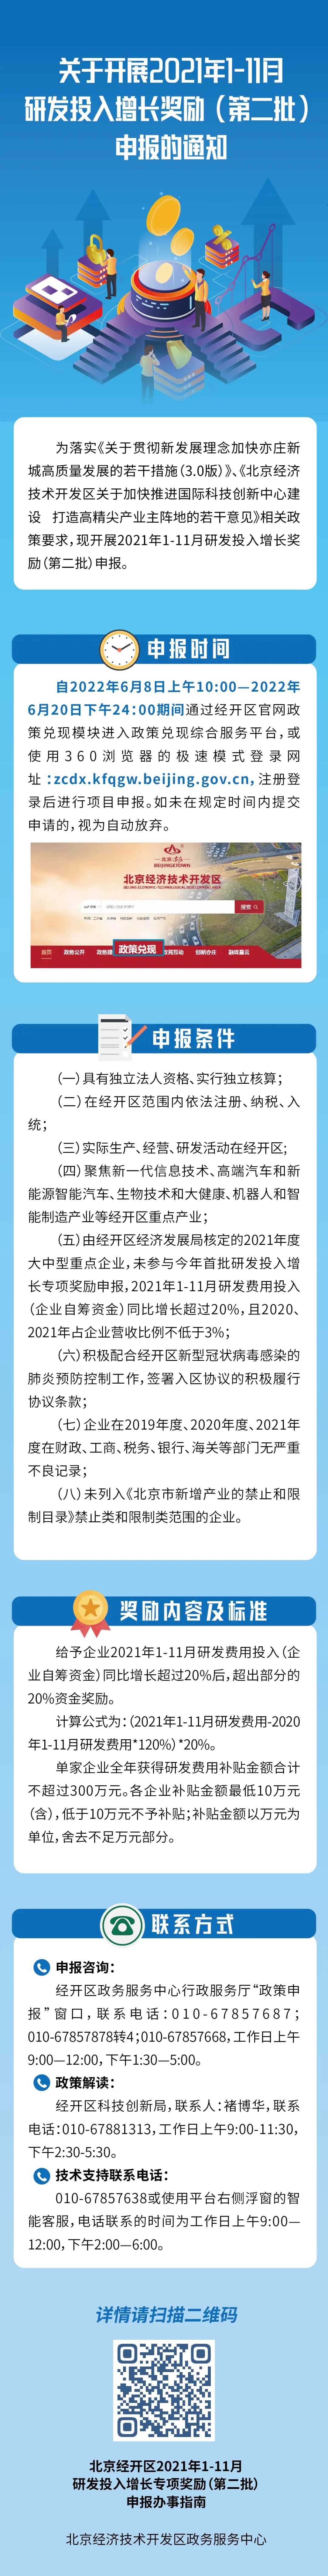 2021年北京研发投入增长奖励